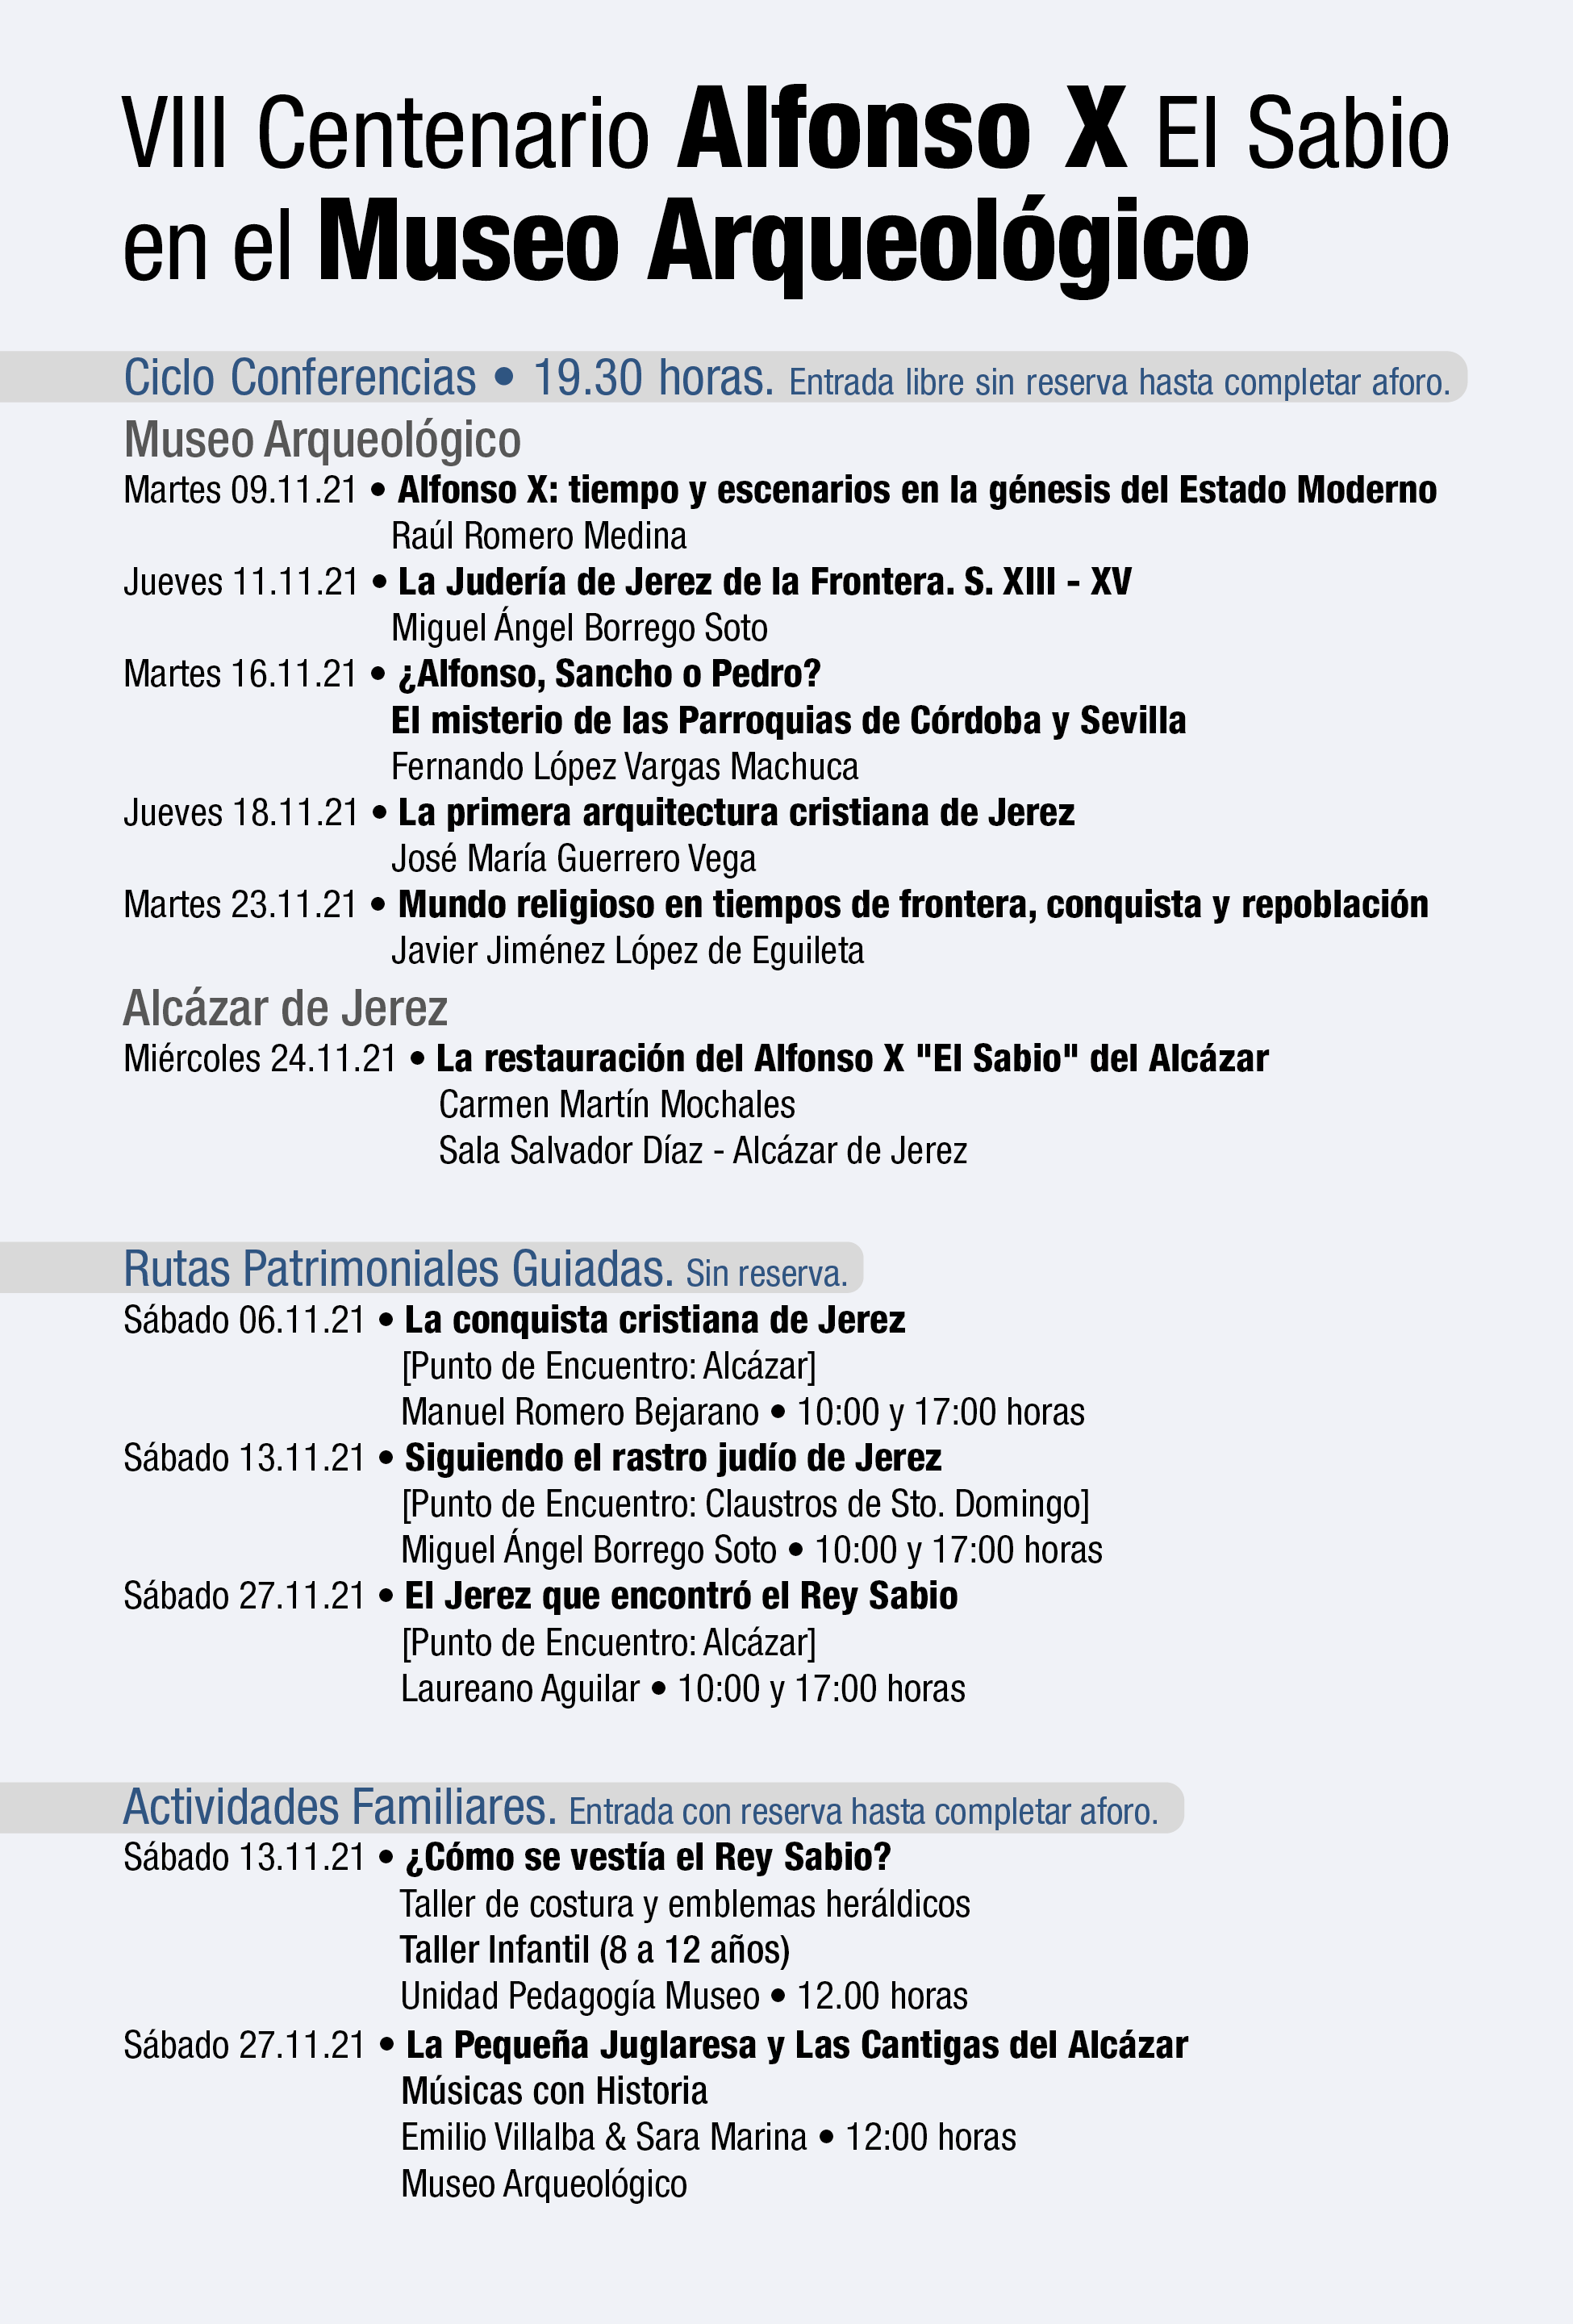 sites/default/files/2021/agenda/eventos-culturales/Programacion_VIII_Centenario_Alfonso_X_El_Sabio.png